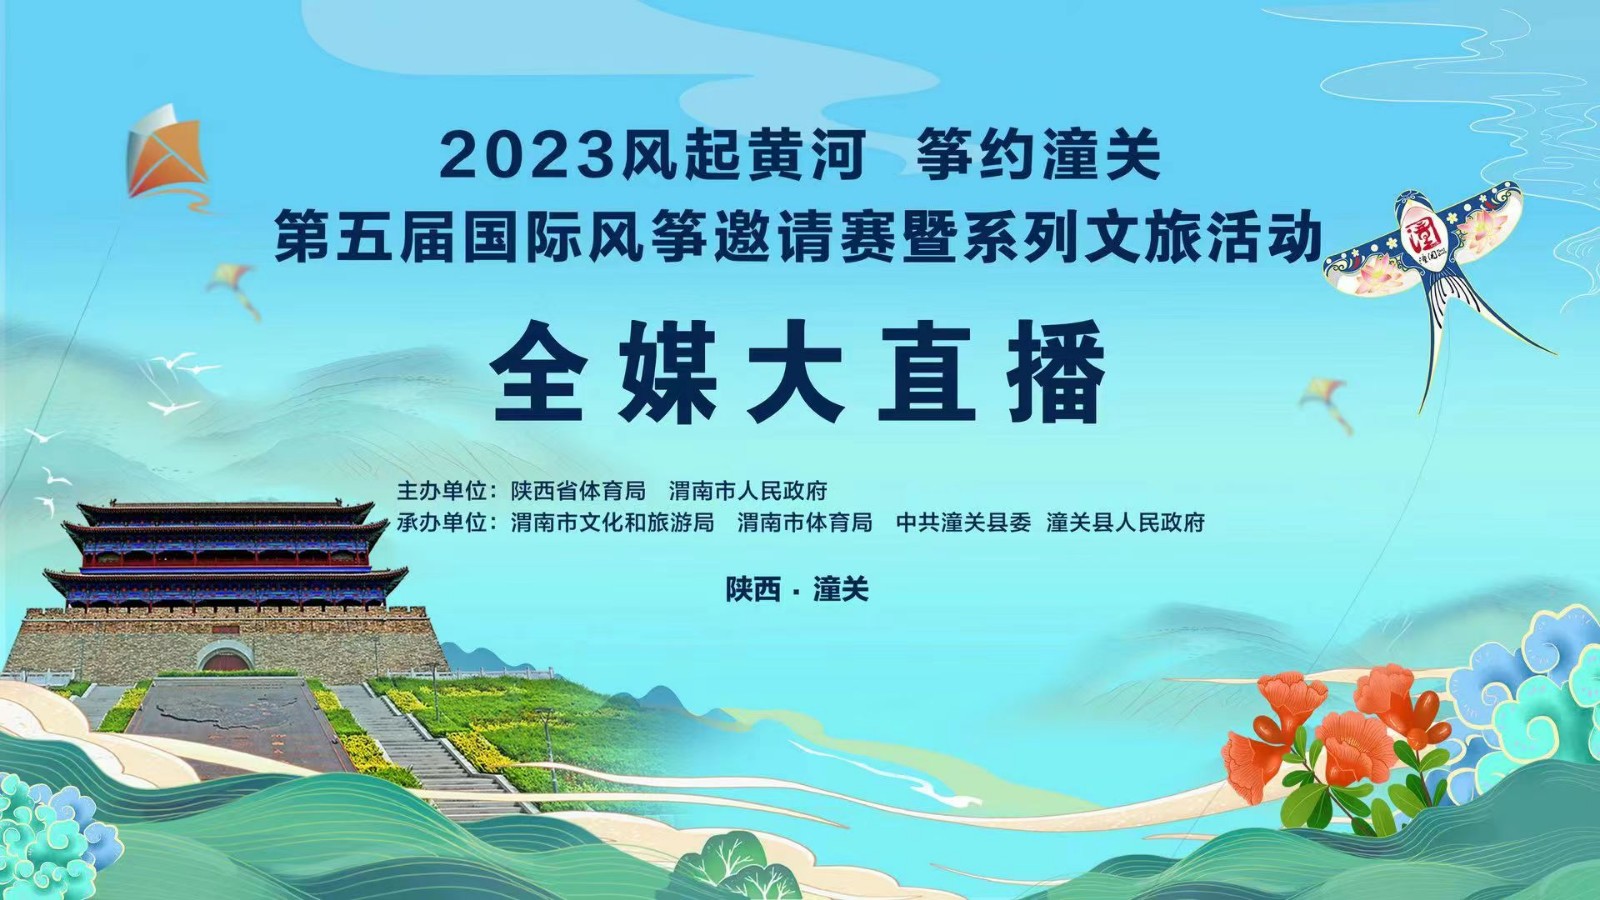 2023风起黄河 筝约潼关第五届国际风筝邀请赛